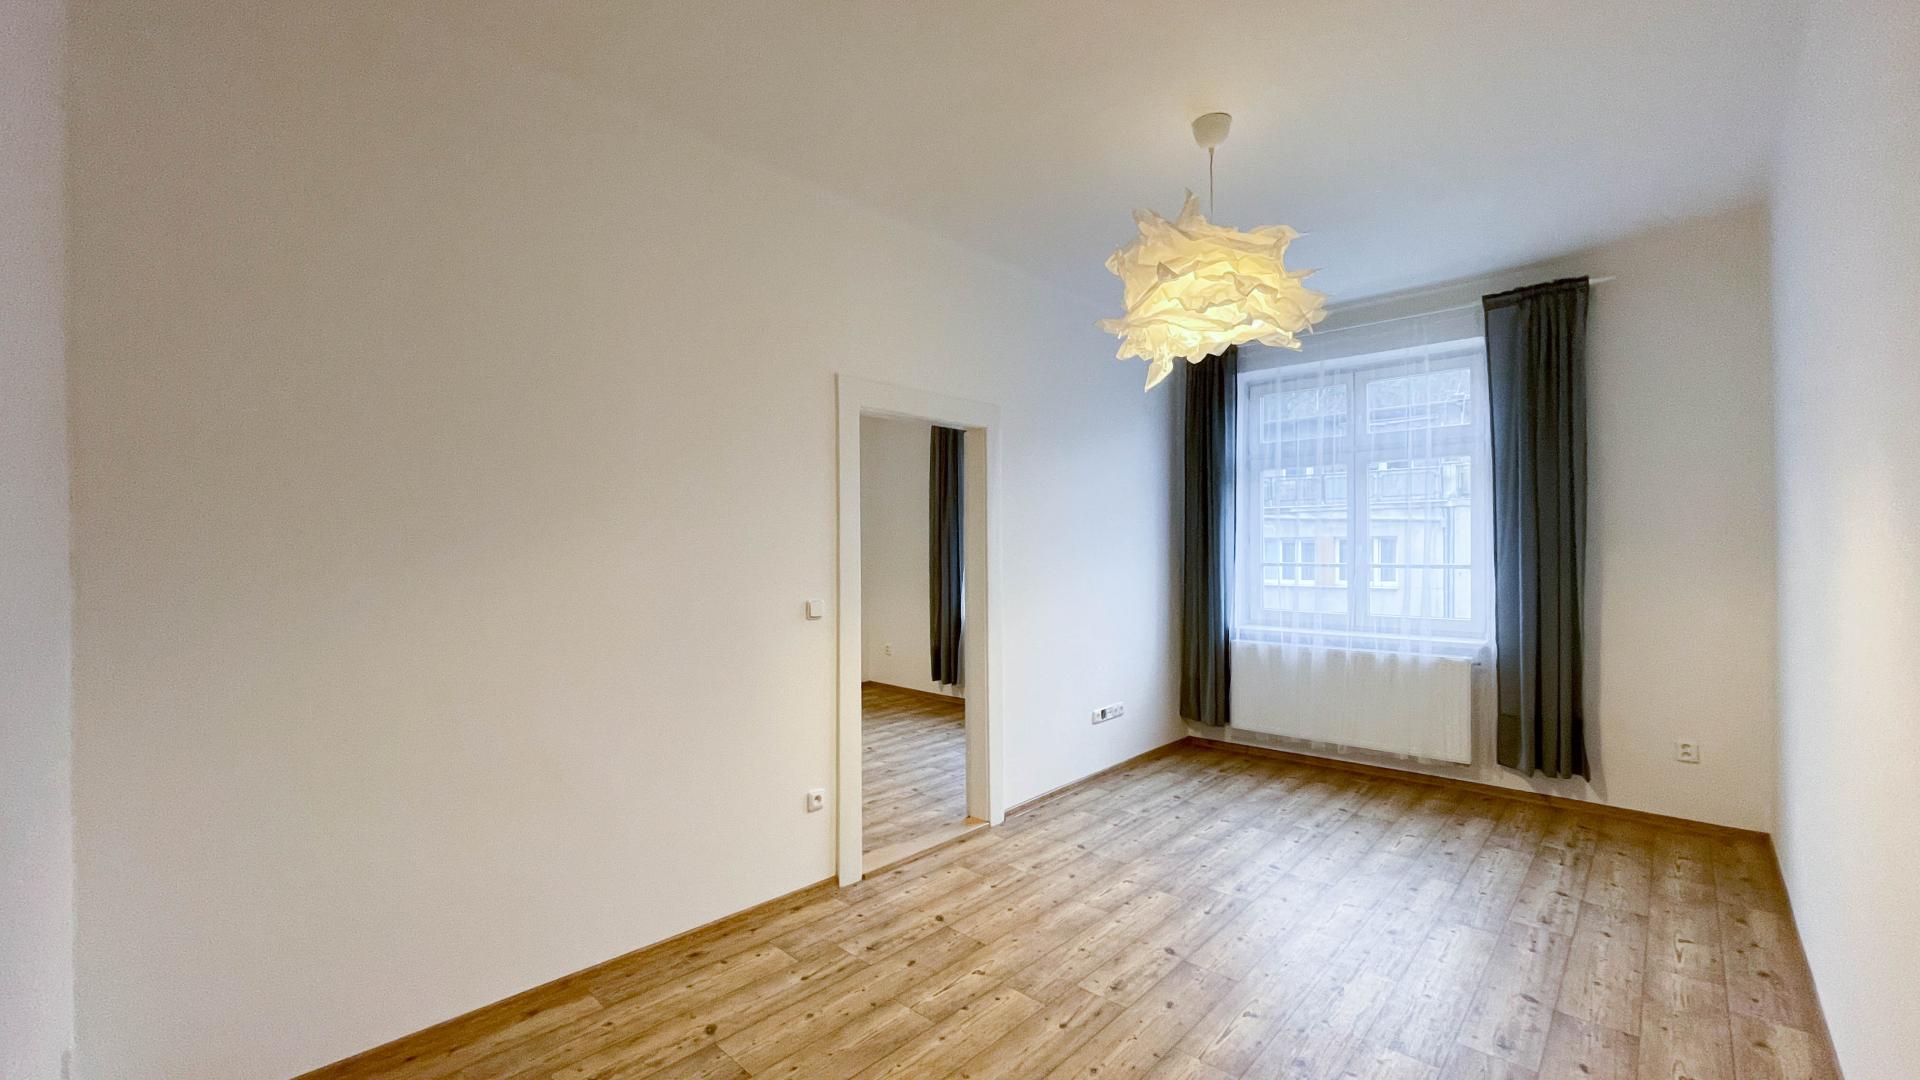 Pronájem bytu 2+1, 56m2, po rekonstrukci, 3. patro, výtah, sklep, Radlická ulice, Praha 5